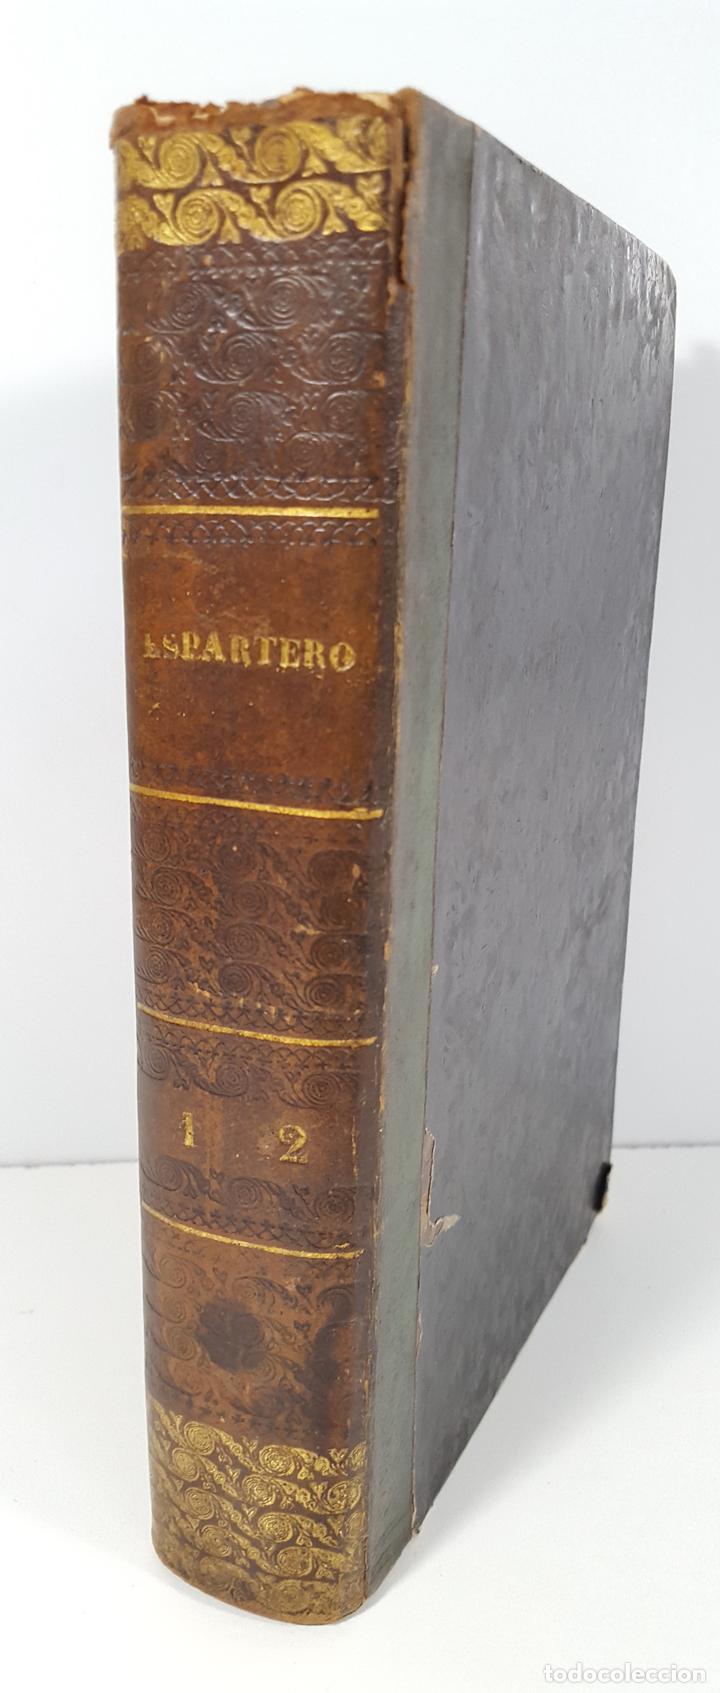 VIDA MILITAR Y POLÍTICA DE ESPARTERO. 2 TOMOS EN 1. MADRID. 1844. (Libros de Segunda Mano - Biografías)